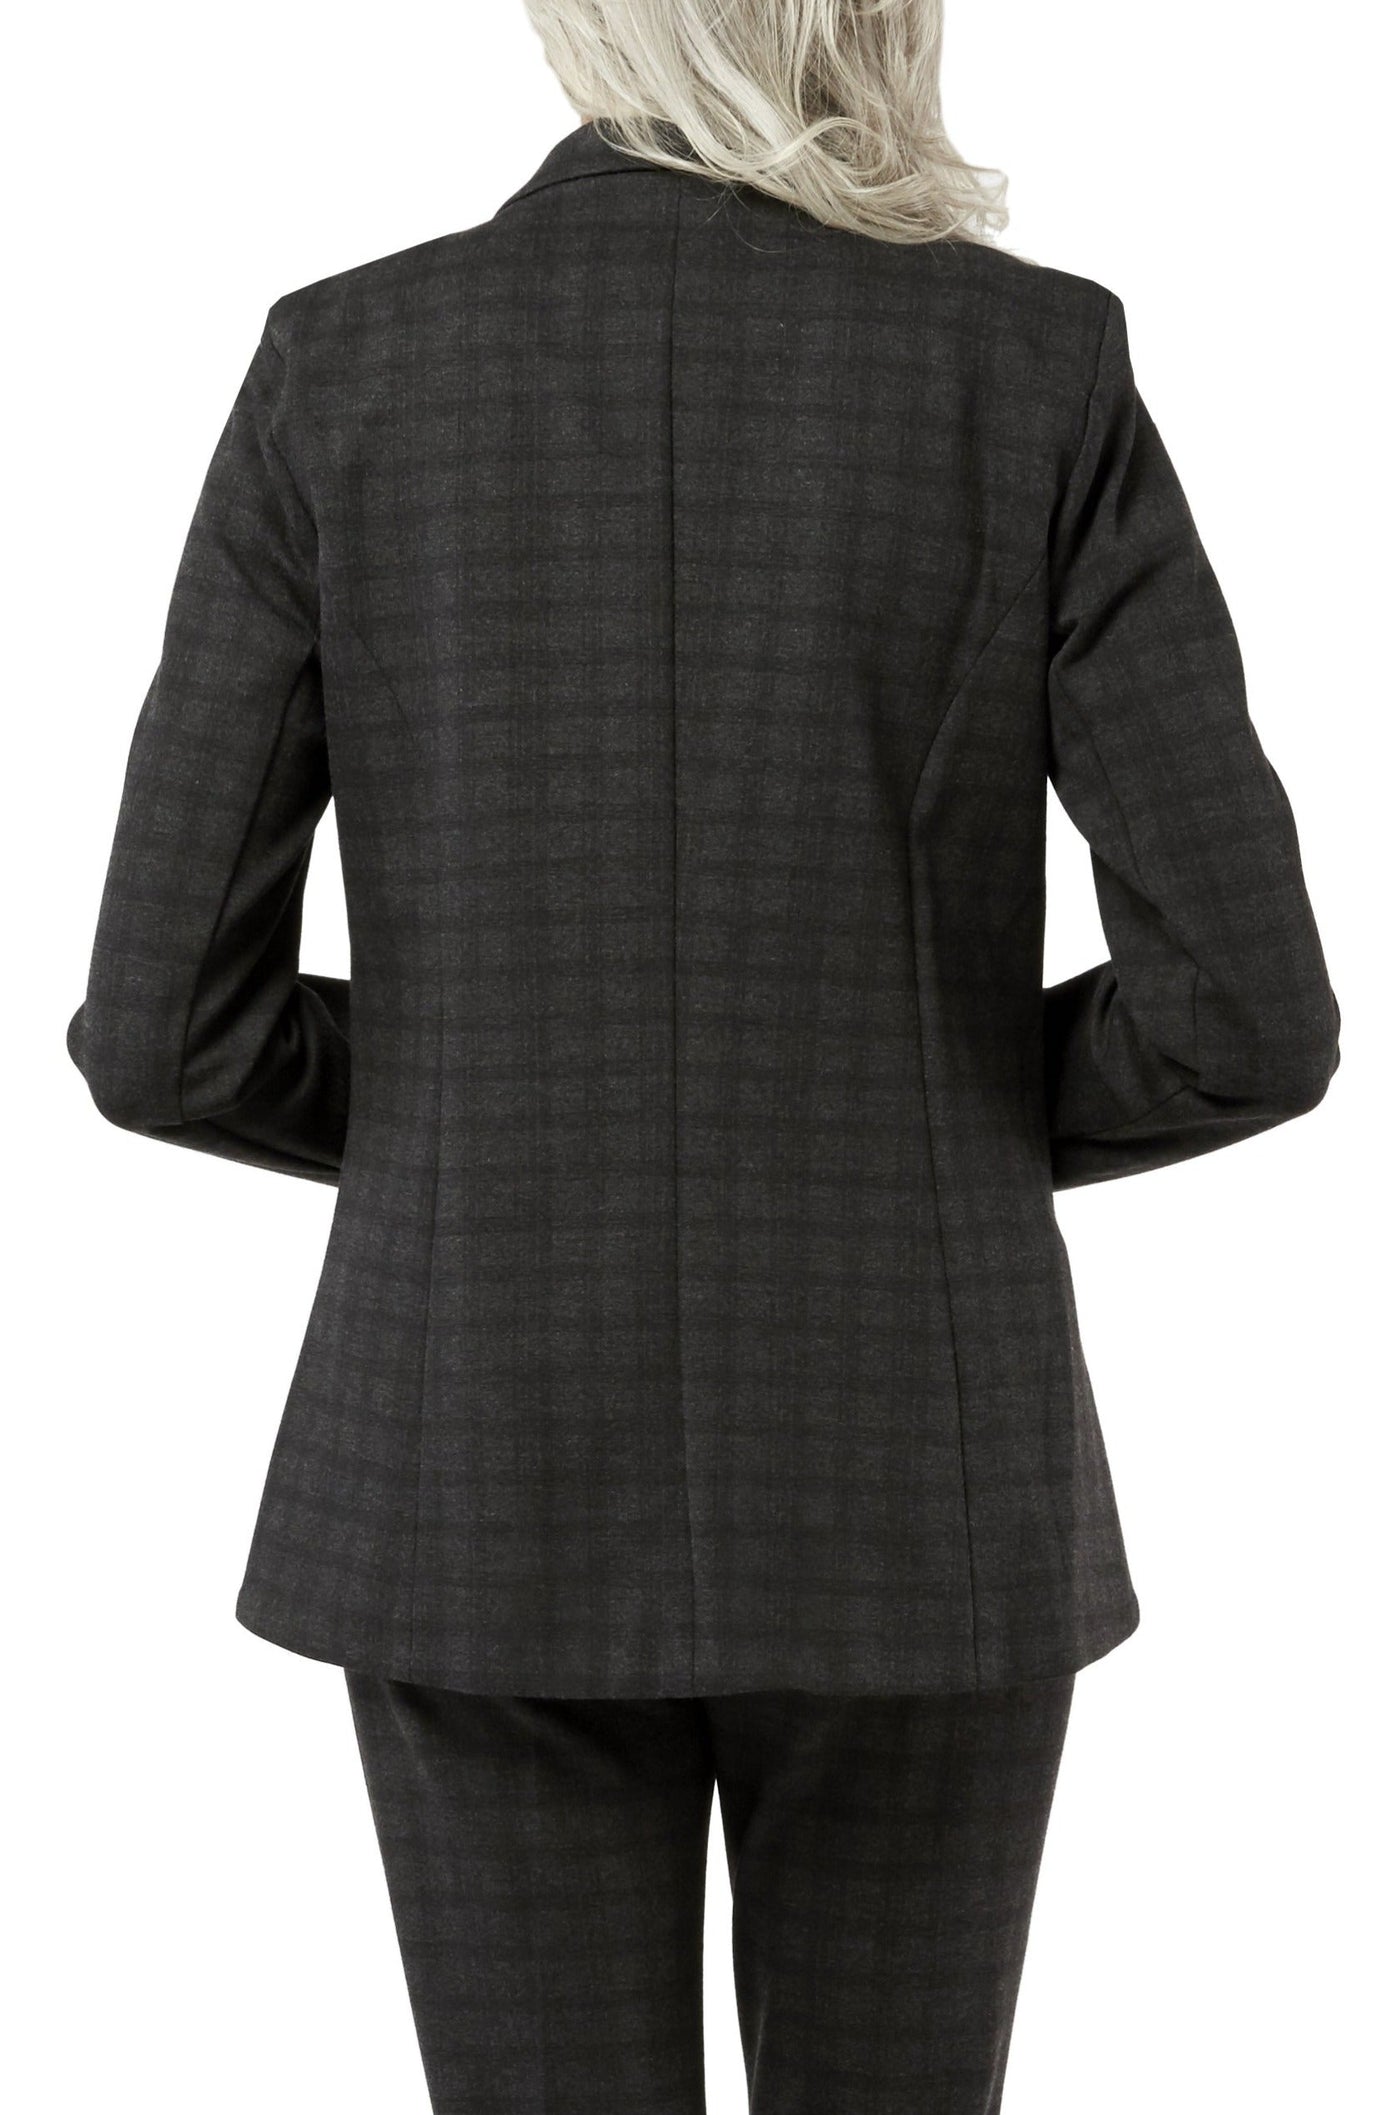 Dalton Jacket - Charcoal Plaid - Print Knit: FINAL SALE